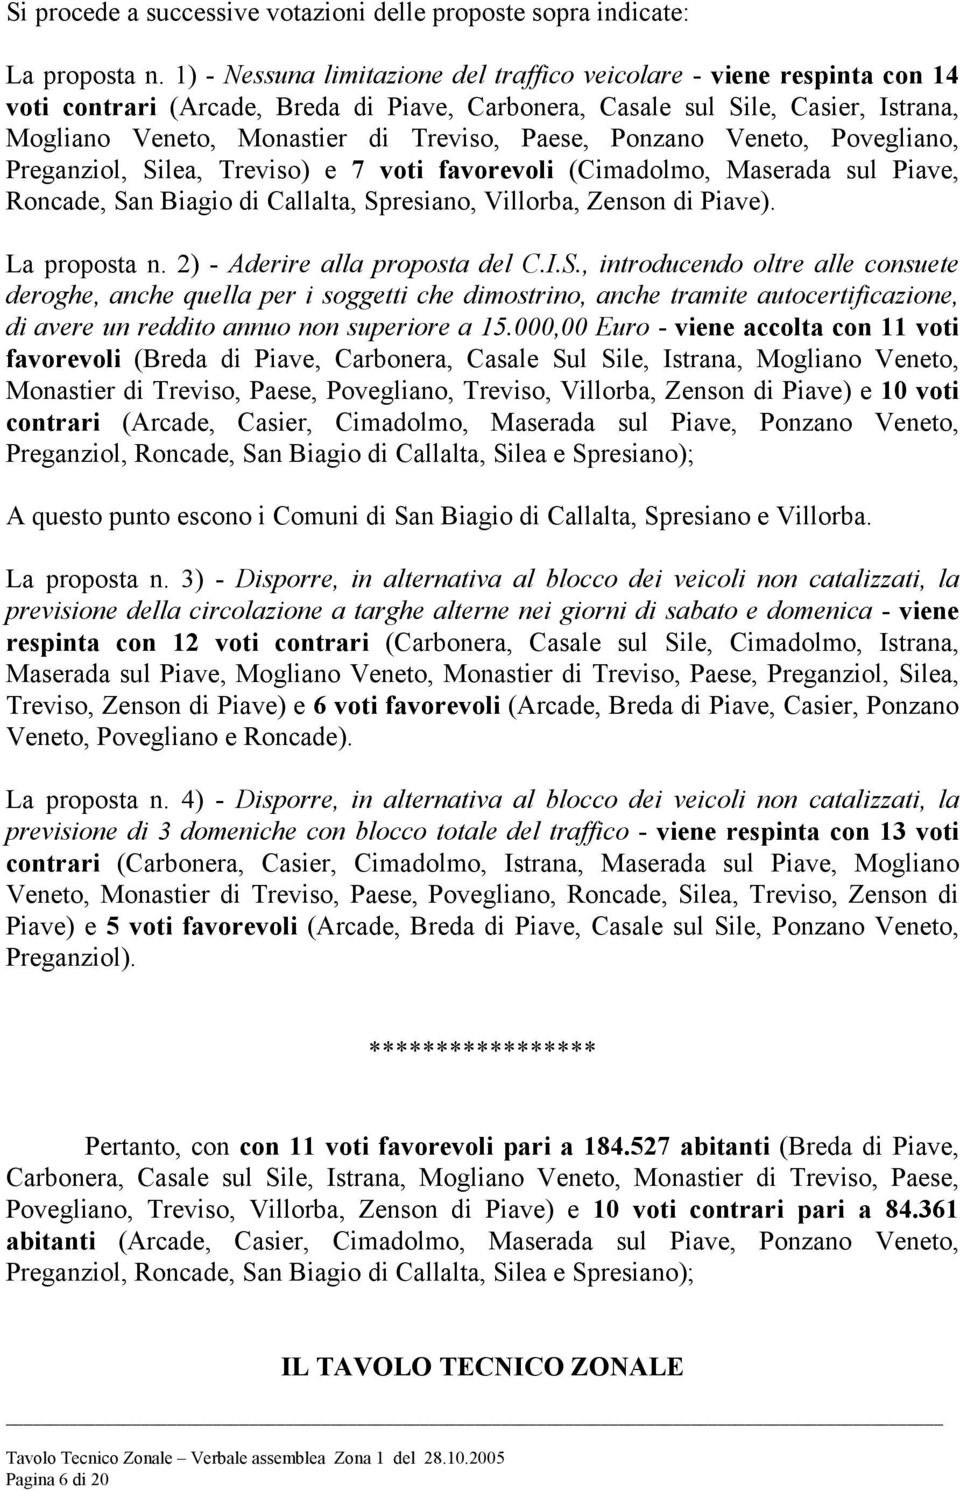 Paese, Ponzano Veneto, Povegliano, Preganziol, Silea, Treviso) e 7 voti favorevoli (Cimadolmo, Maserada sul Piave, Roncade, San Biagio di Callalta, Spresiano, Villorba, Zenson di Piave).